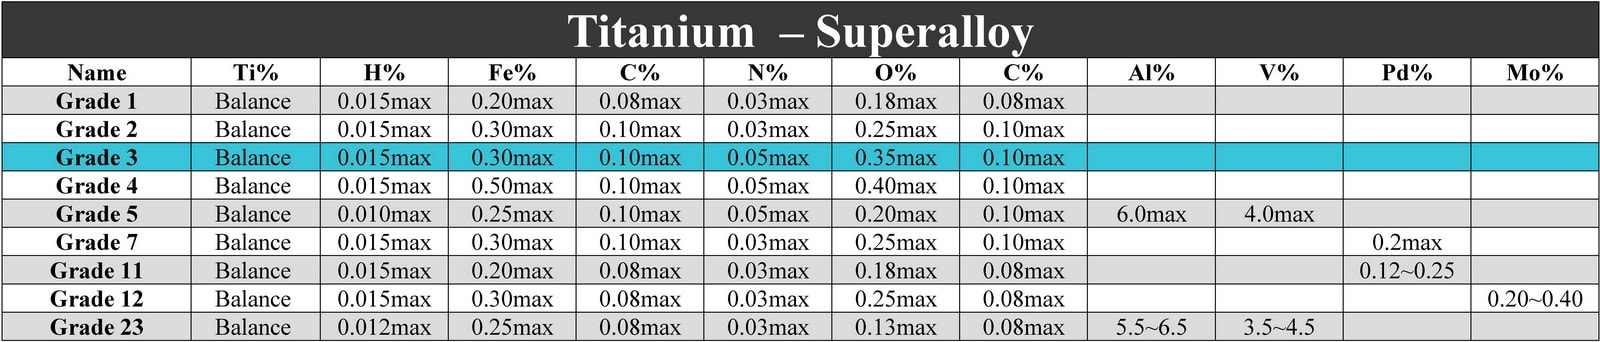 آنالیز آلیاژ تیتانیوم گرید 3 - Analyse Titanium Grade 3 CP2 Ti